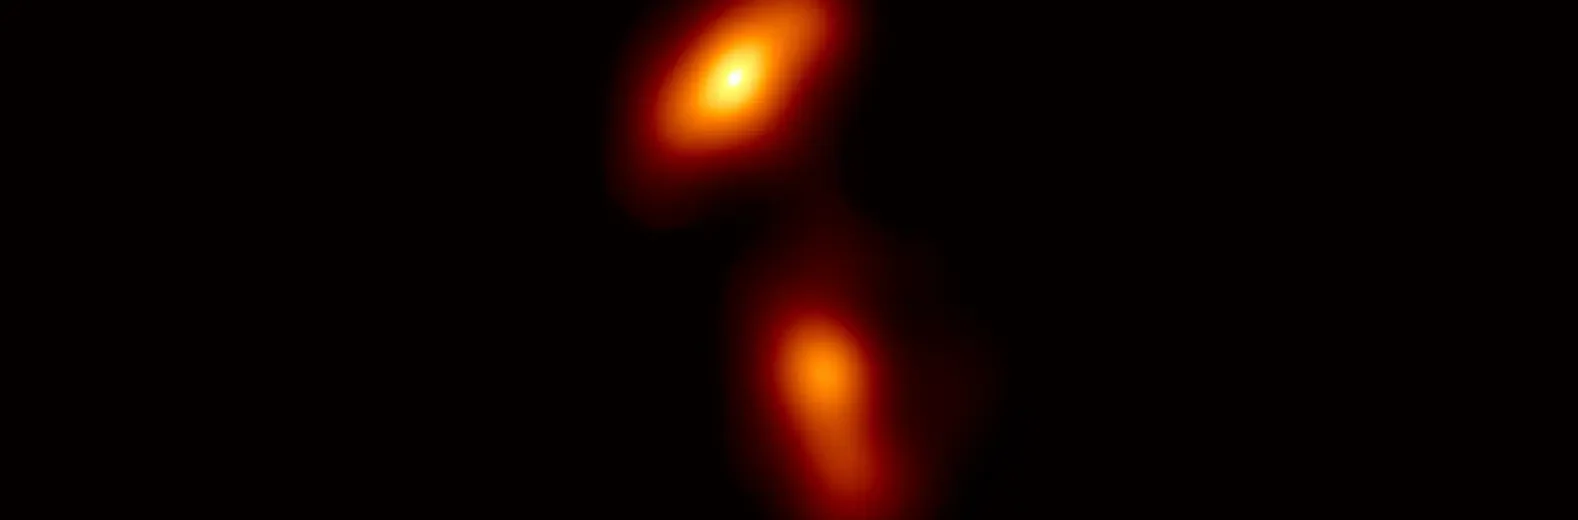 ALMA ayuda a descubrir extraña estructura lateral en chorro de distante agujero negro